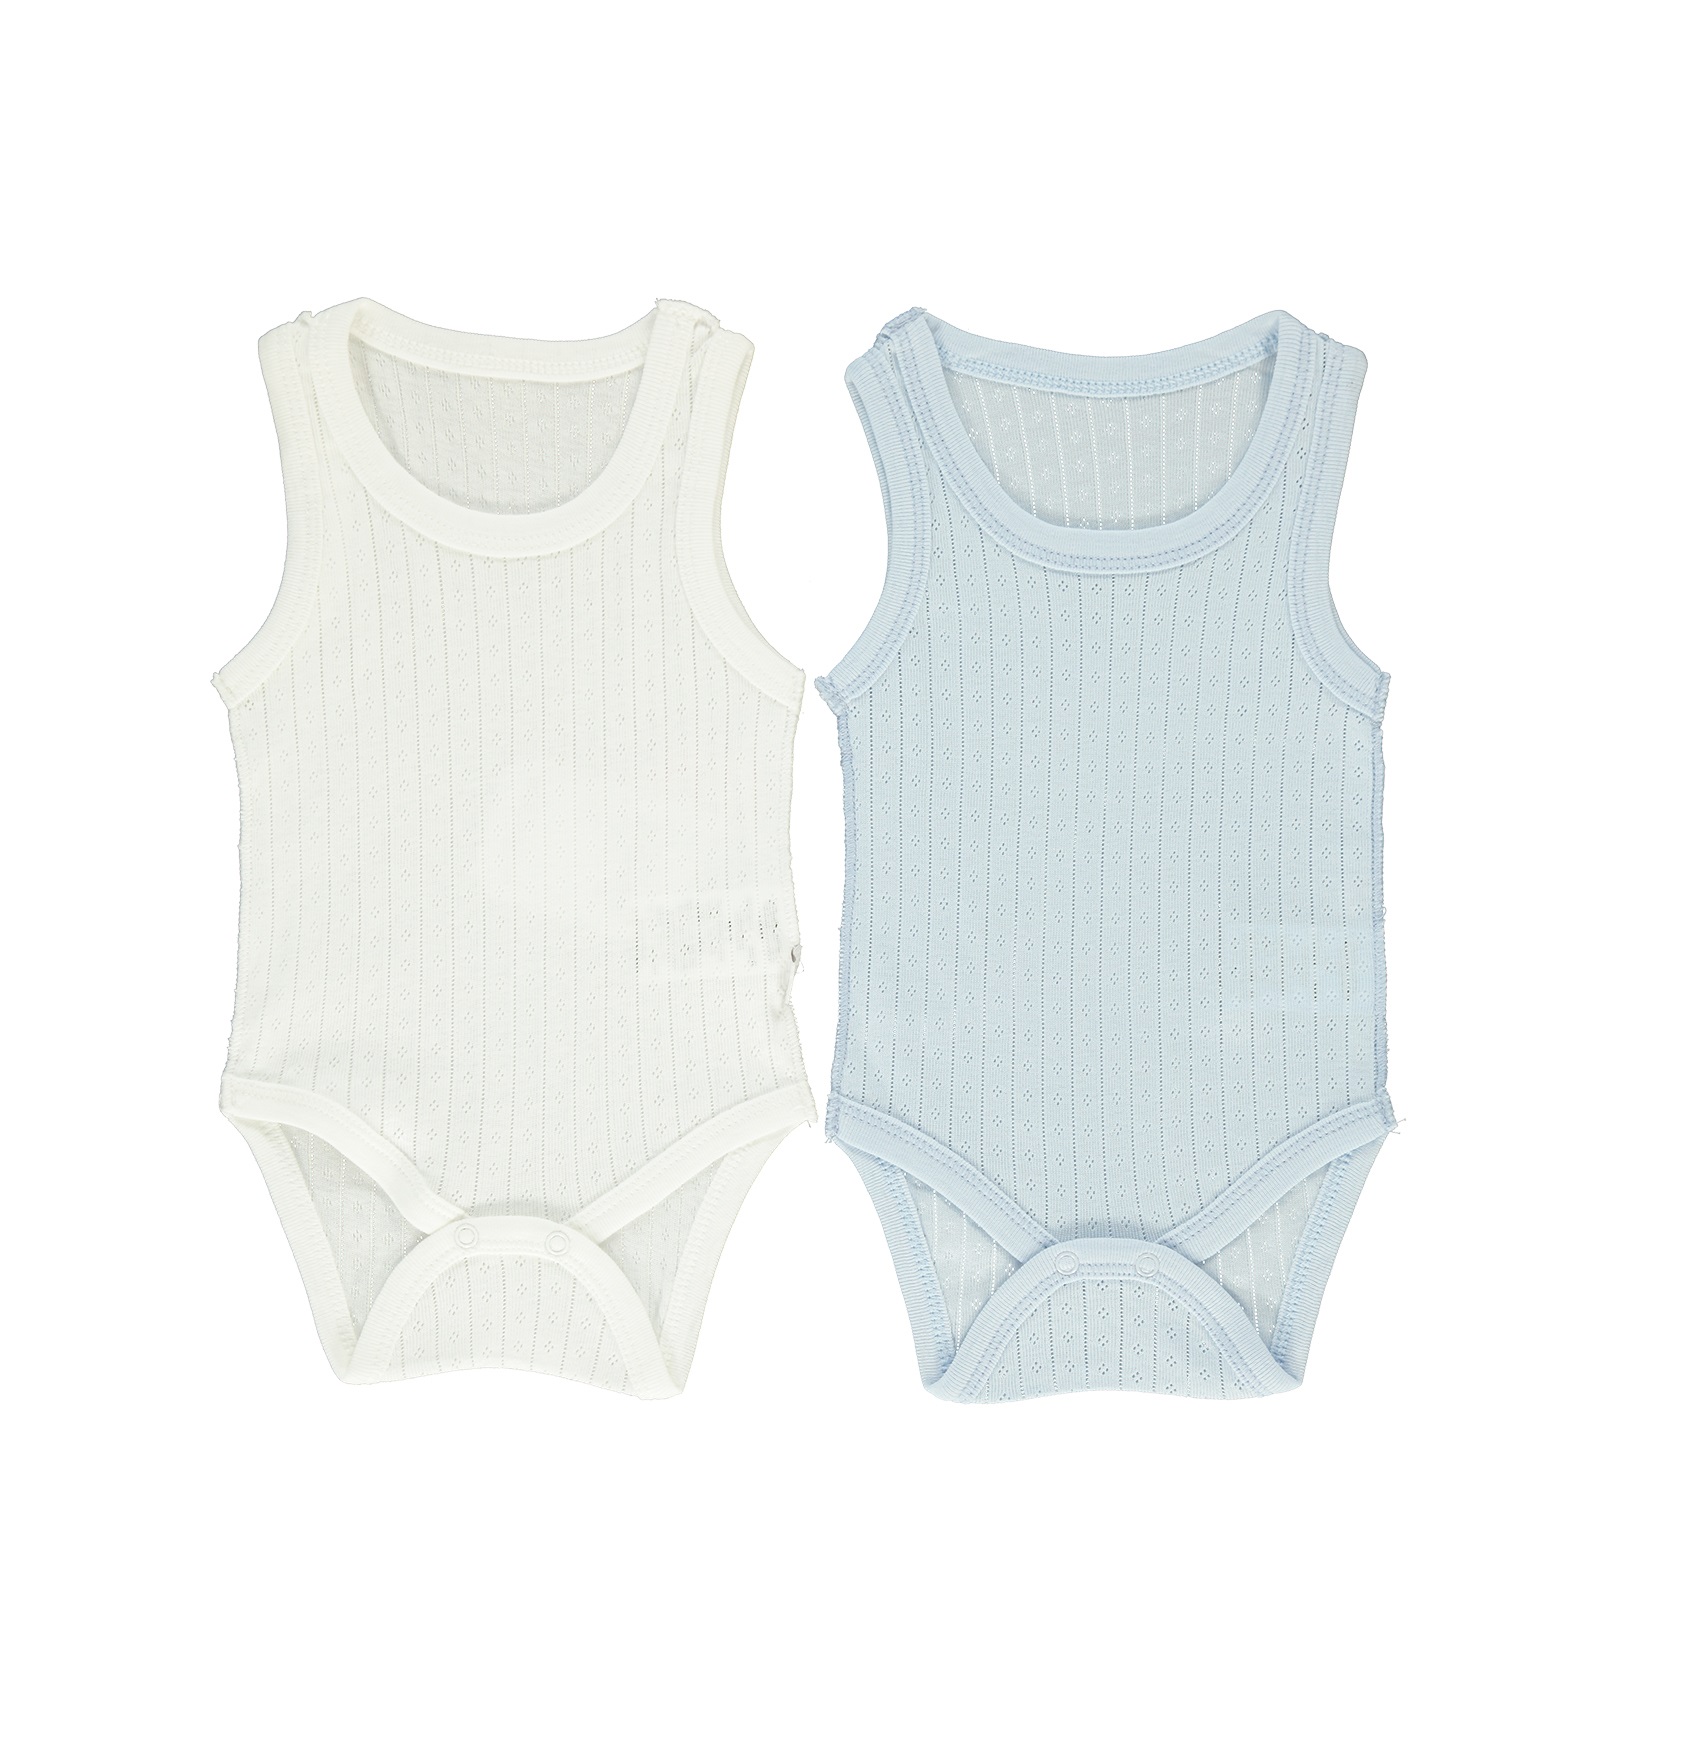 Παιδικά/Baby/Ρούχα/Φορμάκια-Κορμάκια SAM 0-13 - Βρεφικά φορμάκια σετ των 2 SAM 0-13 POINTEL γαλάζιο εκρού